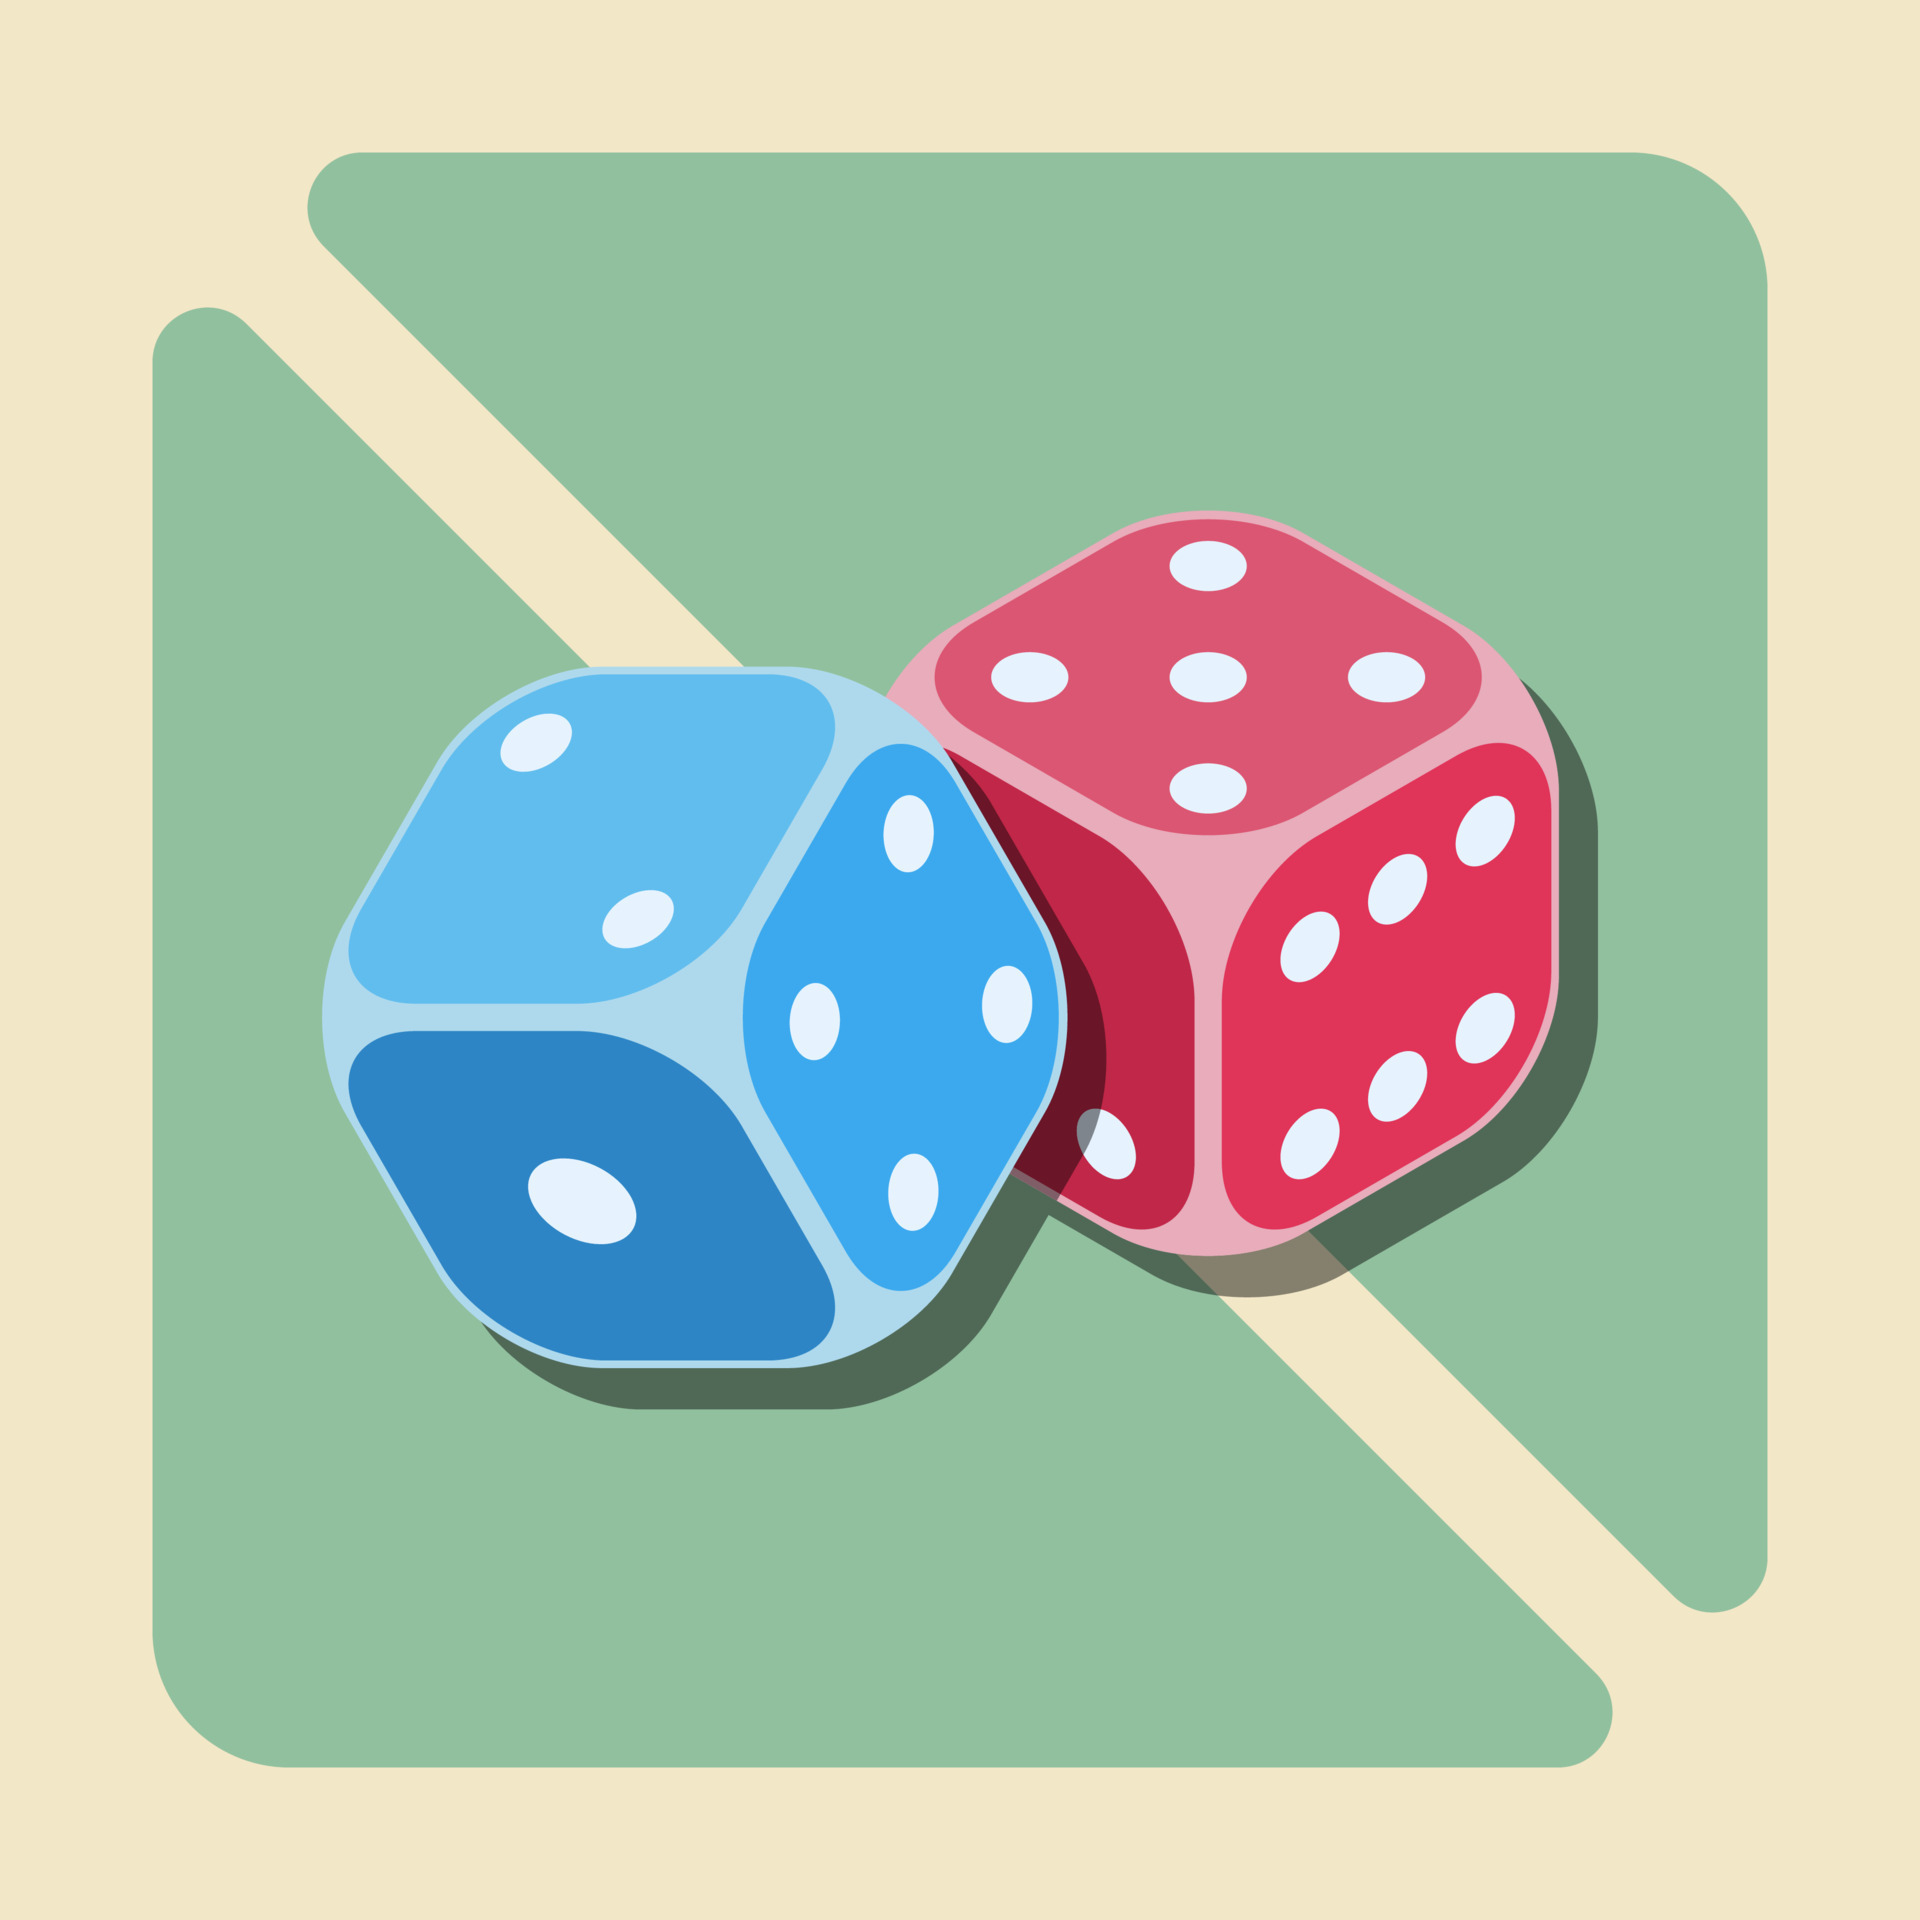 ilustração vetorial de dois dados vermelhos e azuis são comumente usados  para jogos, jogos de azar e apostas 11461437 Vetor no Vecteezy